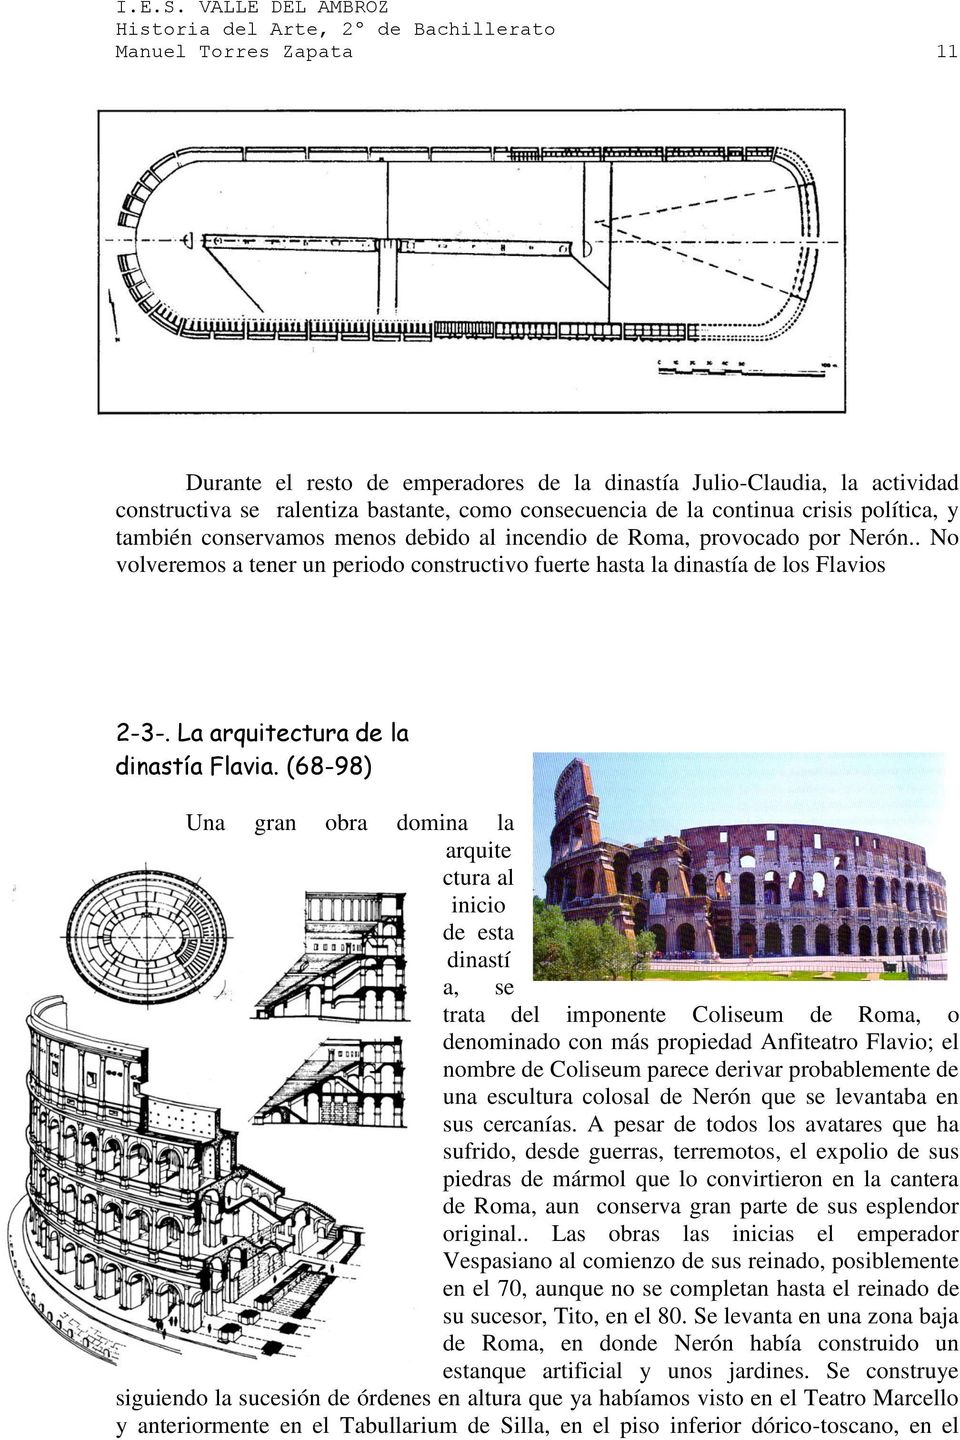 (68-98) Una gran obra domina la arquite ctura al inicio de esta dinastí a, se trata del imponente Coliseum de Roma, o denominado con más propiedad Anfiteatro Flavio; el nombre de Coliseum parece